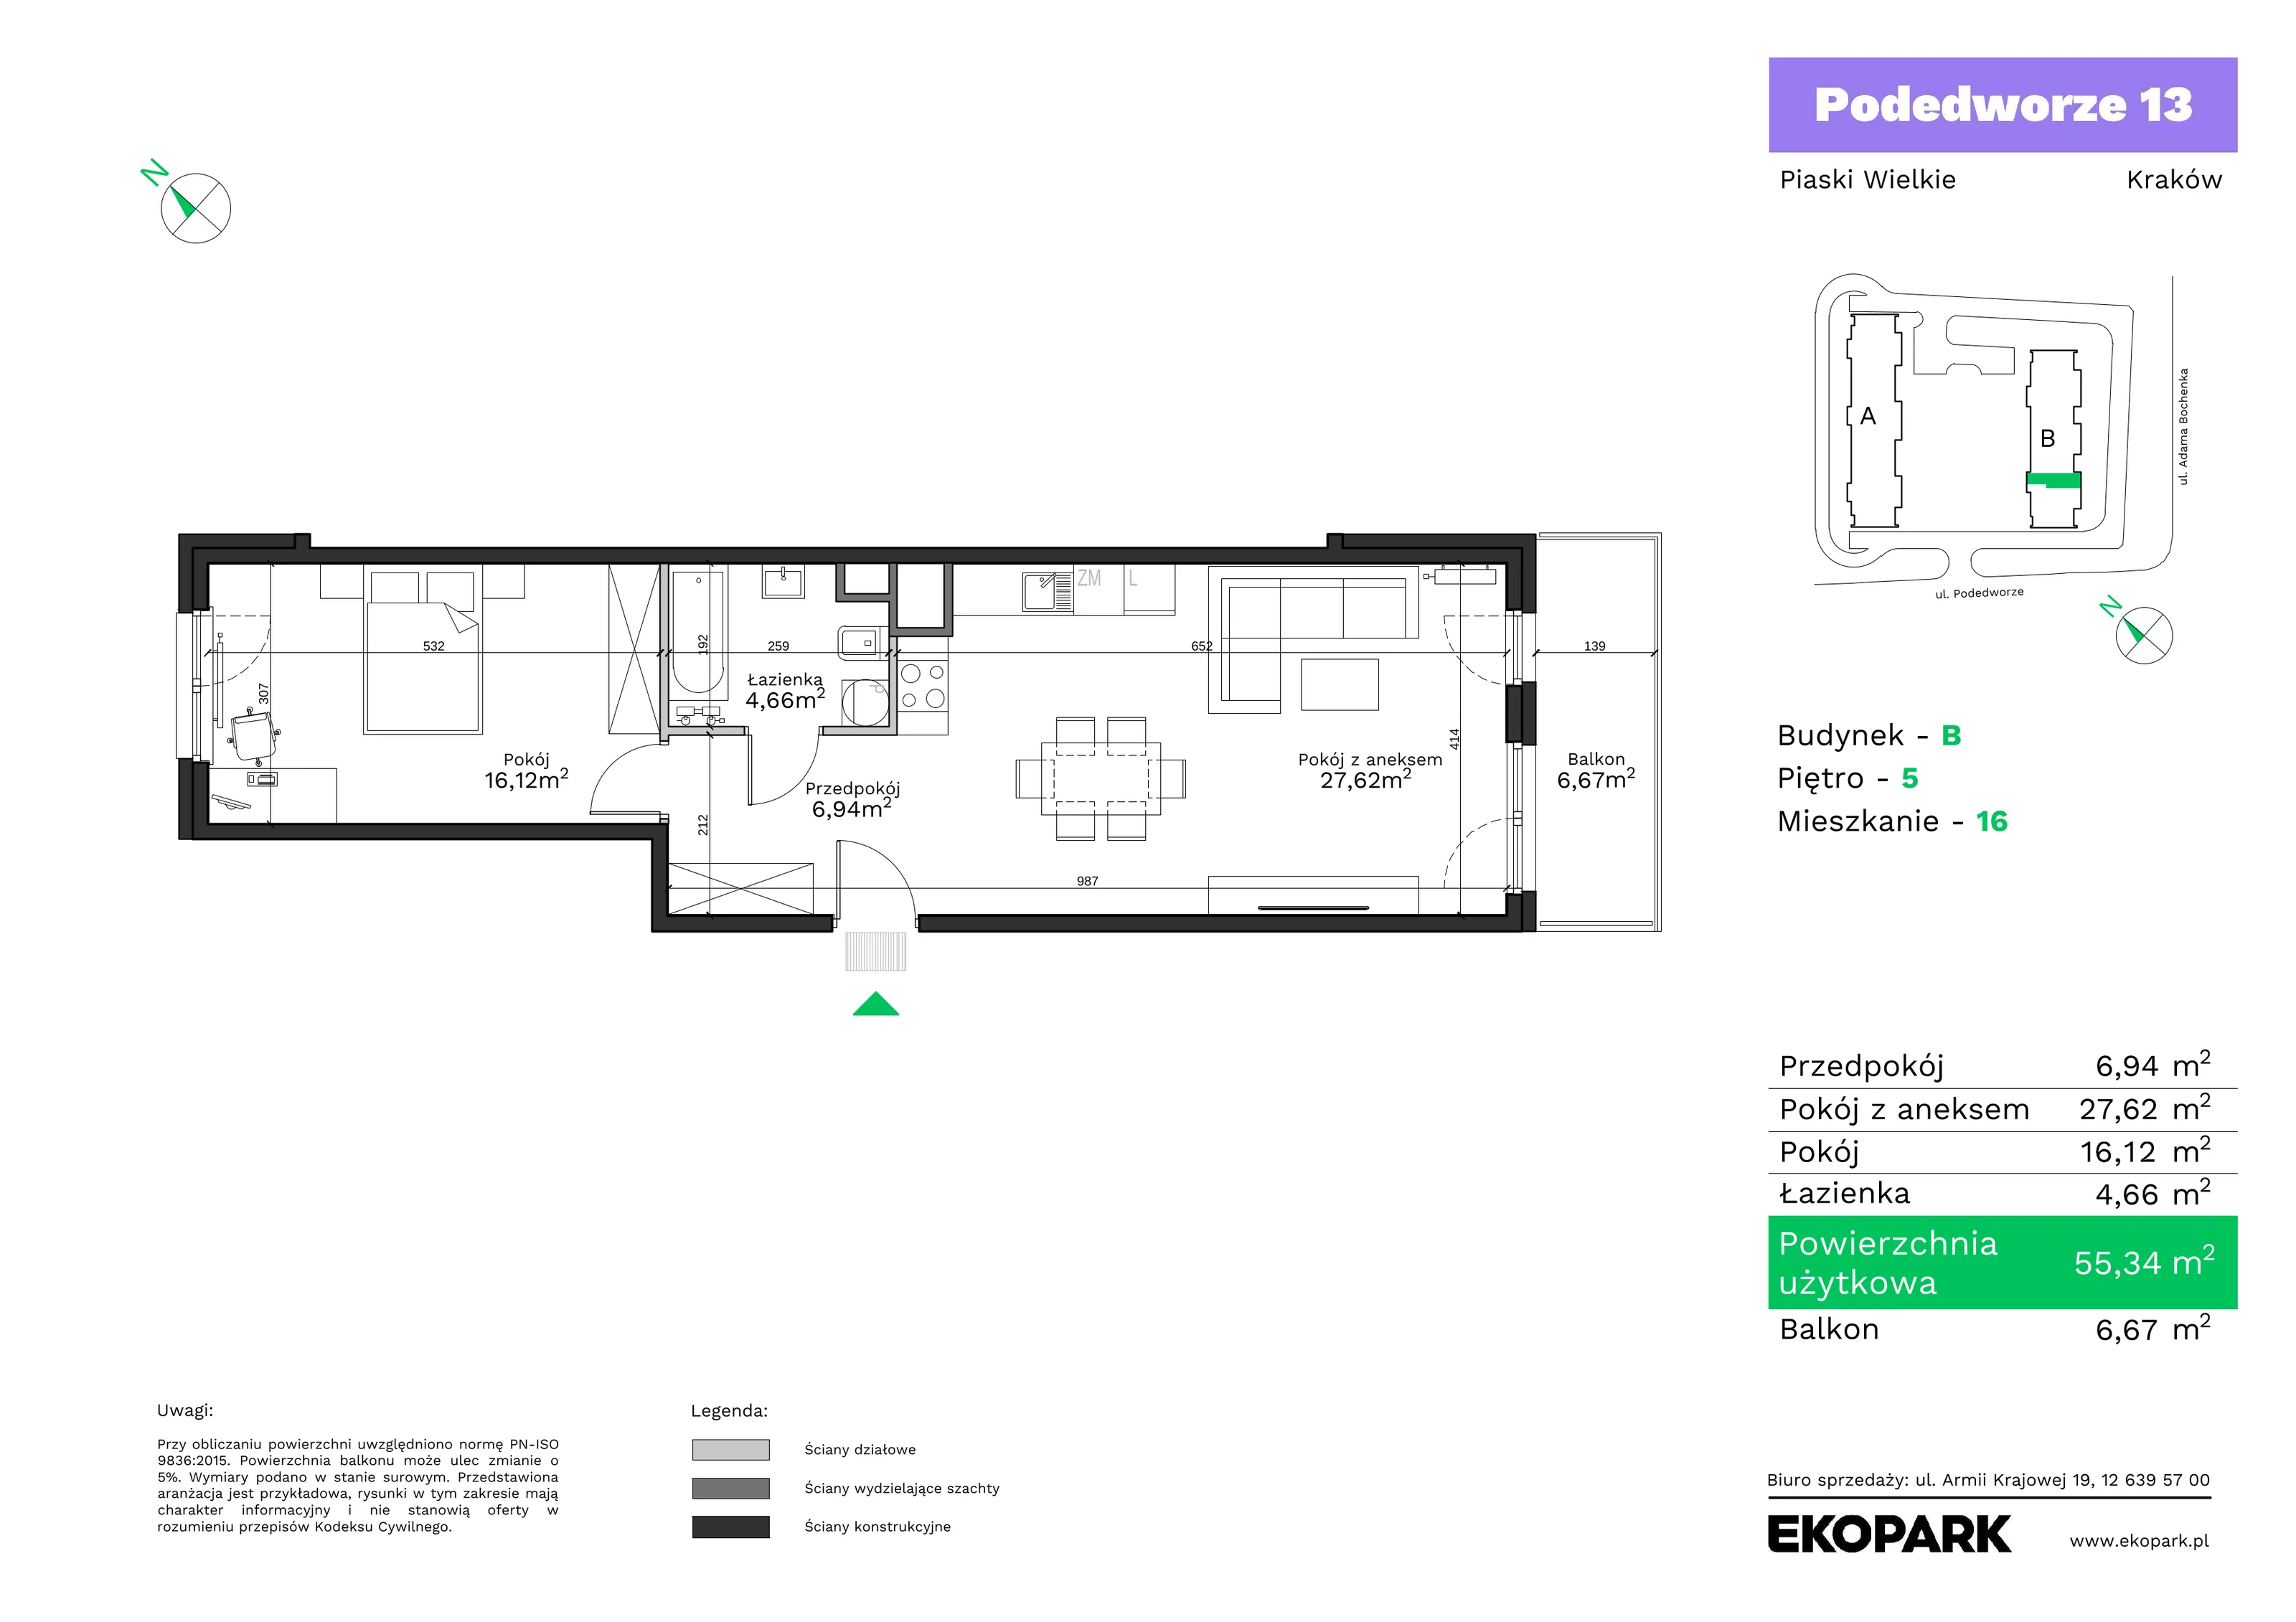 Mieszkanie 55,34 m², piętro 5, oferta nr B16, Podedworze 13, Kraków, Podgórze Duchackie, Piaski Wielkie, ul. Podedworze 13